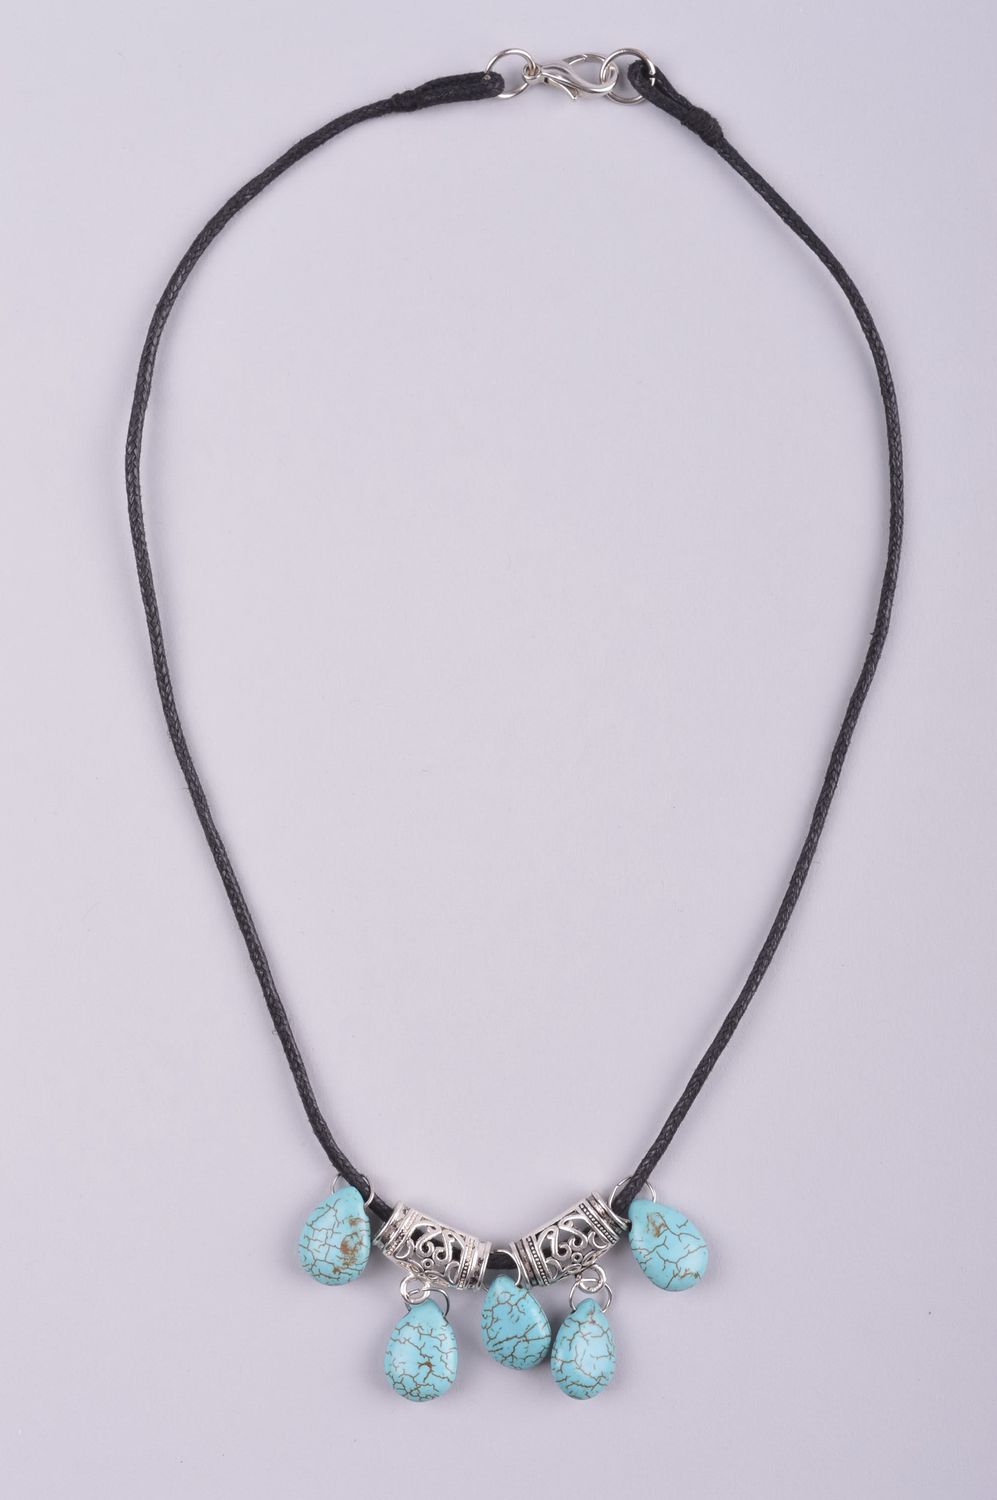 Handmade turquoise necklace elegant romantic necklace stylish accessory photo 2